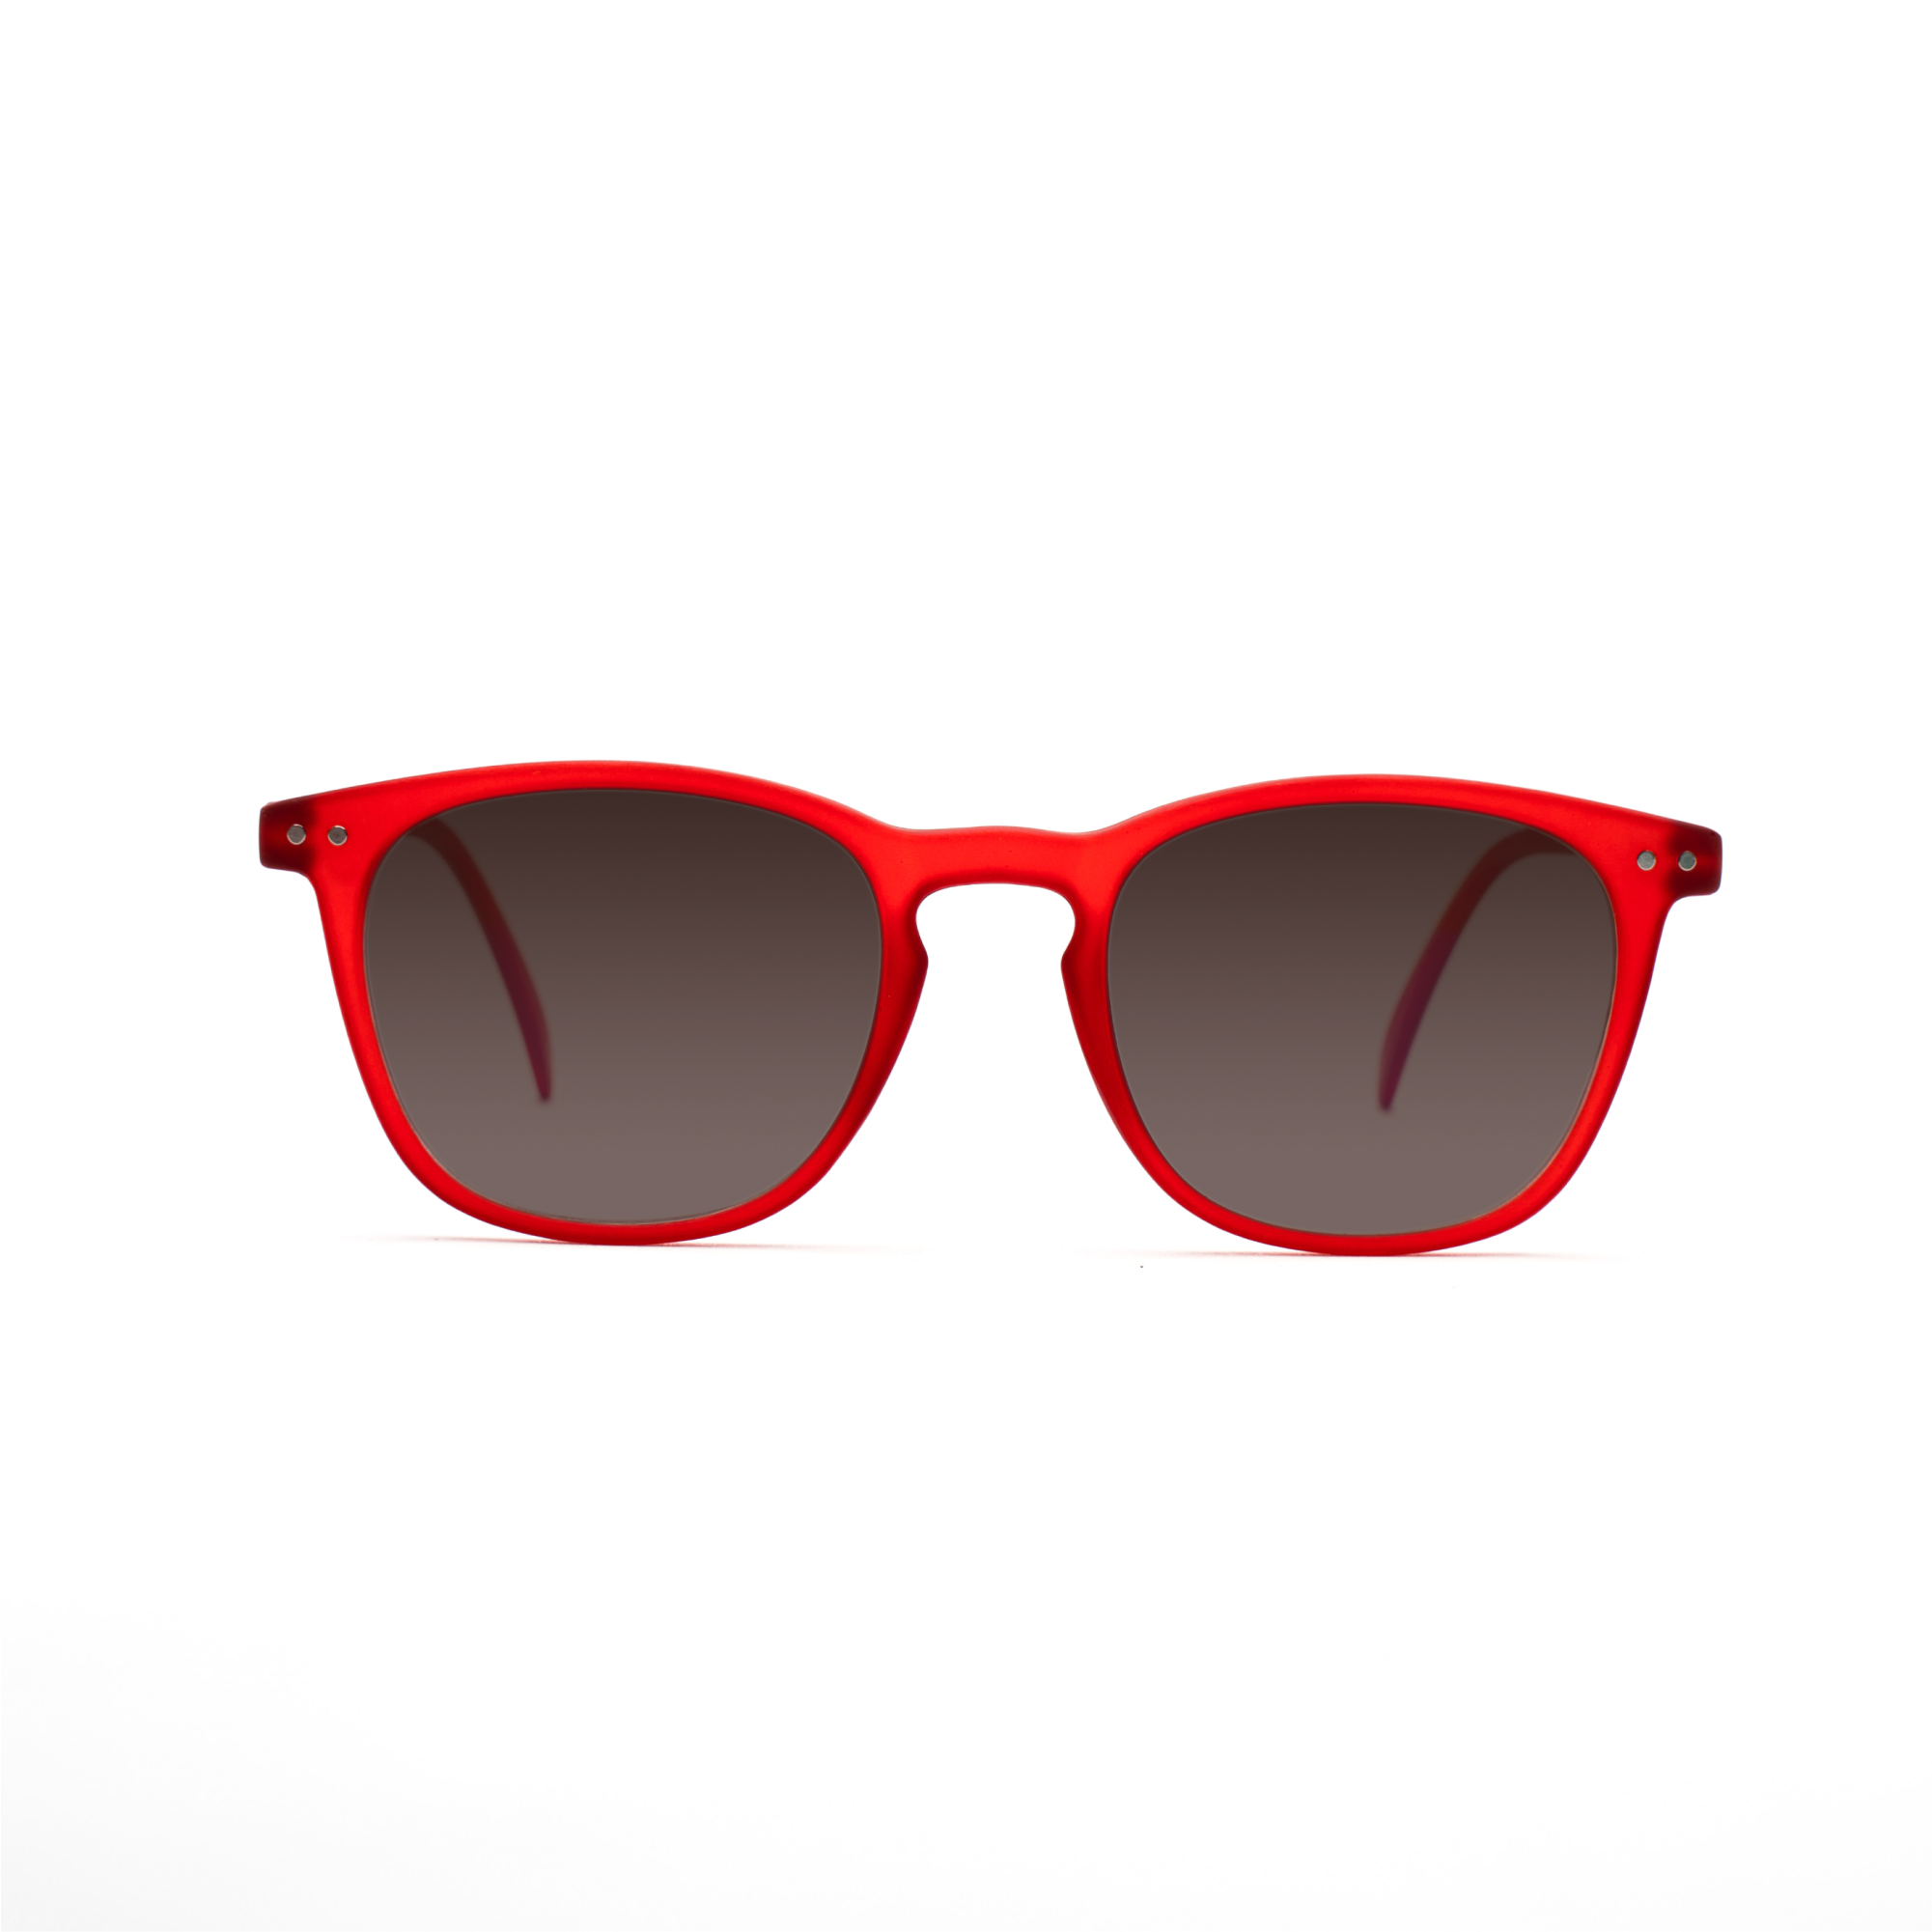 men's polarized sunglasses – William Polarised SUN m - Red